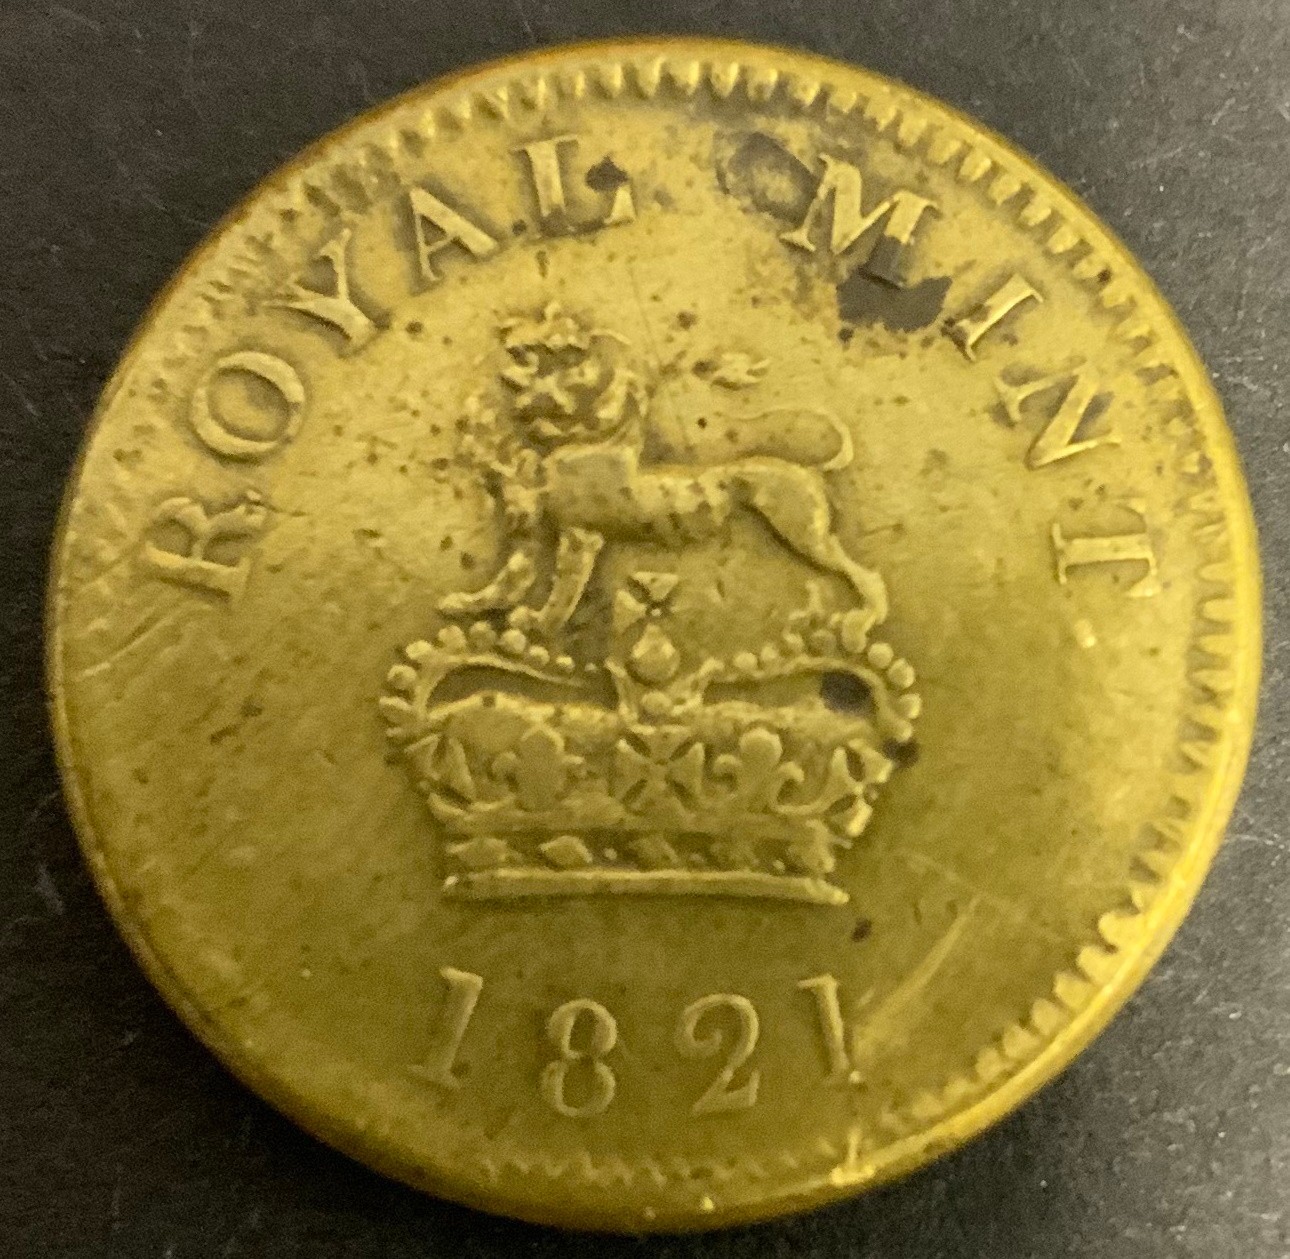 1821 ROYAL MINT BRASS GUINEA COIN WEIGHT